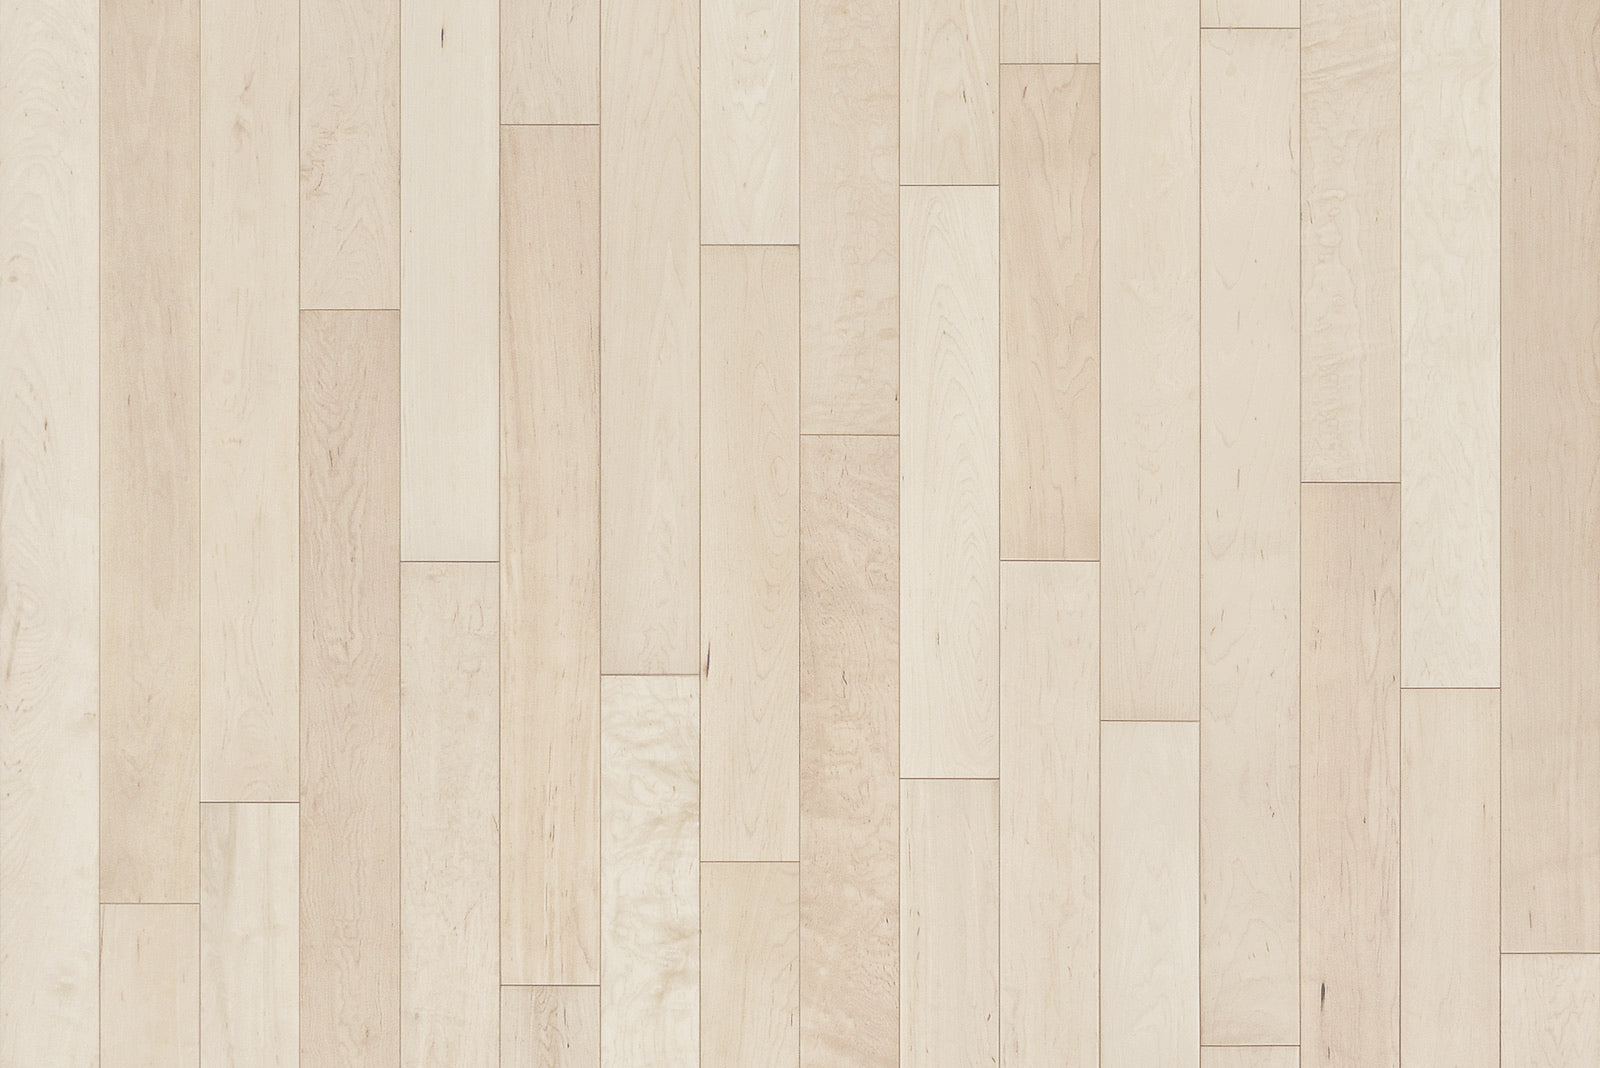 light wood floor texture